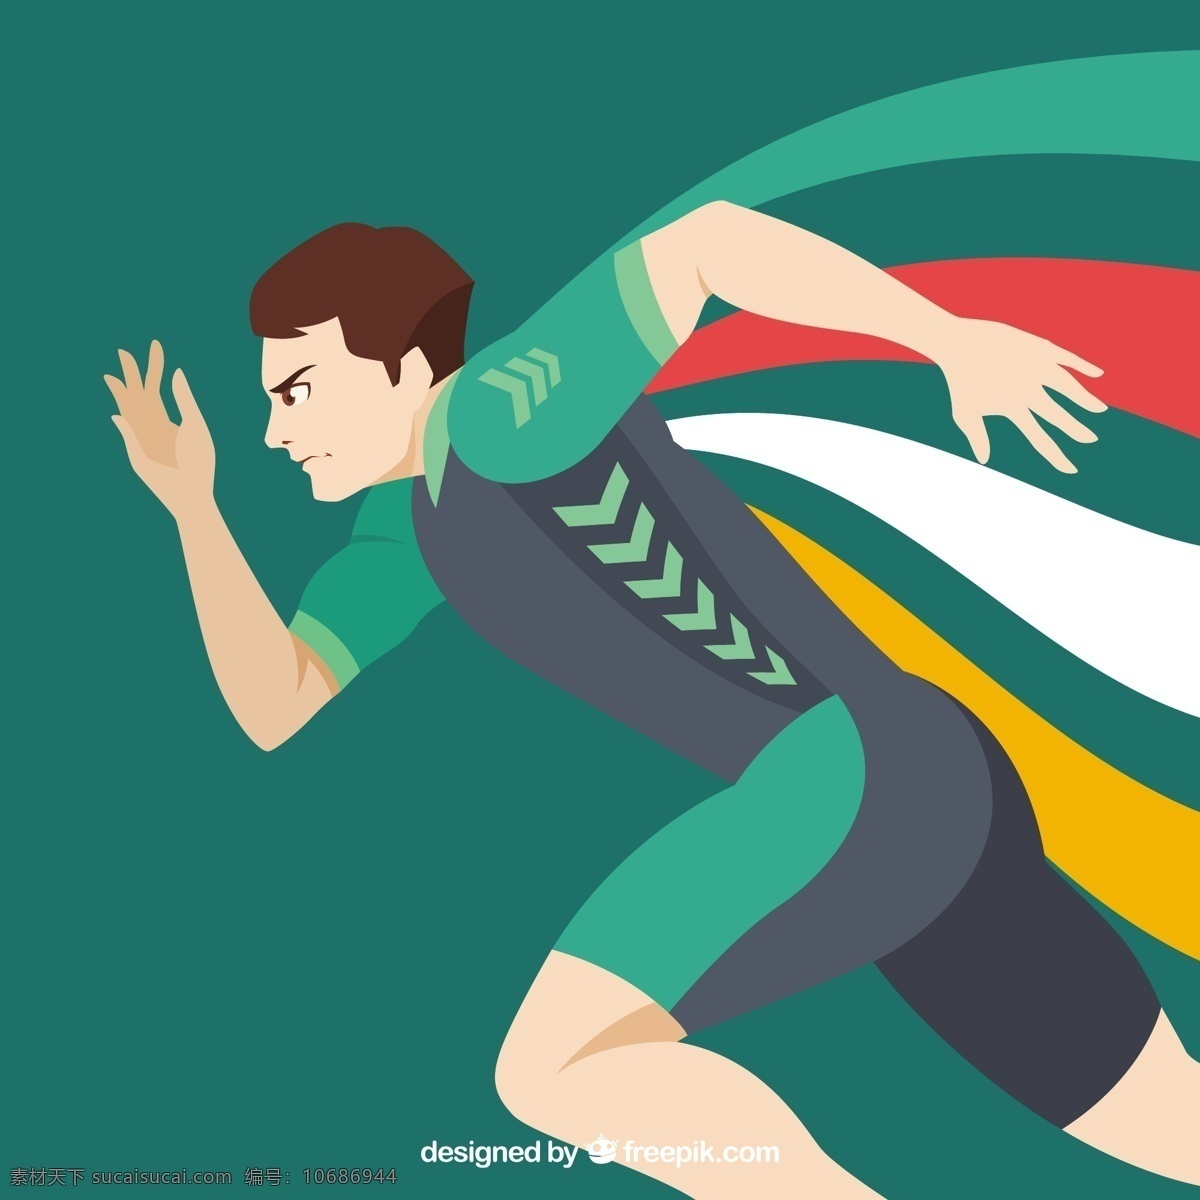 奥运会亚军 夏季 手 运动 健身 健康 卡通 手绘 平板 活动 2016 跑步 训练 巴西 比赛 生活方式 美国